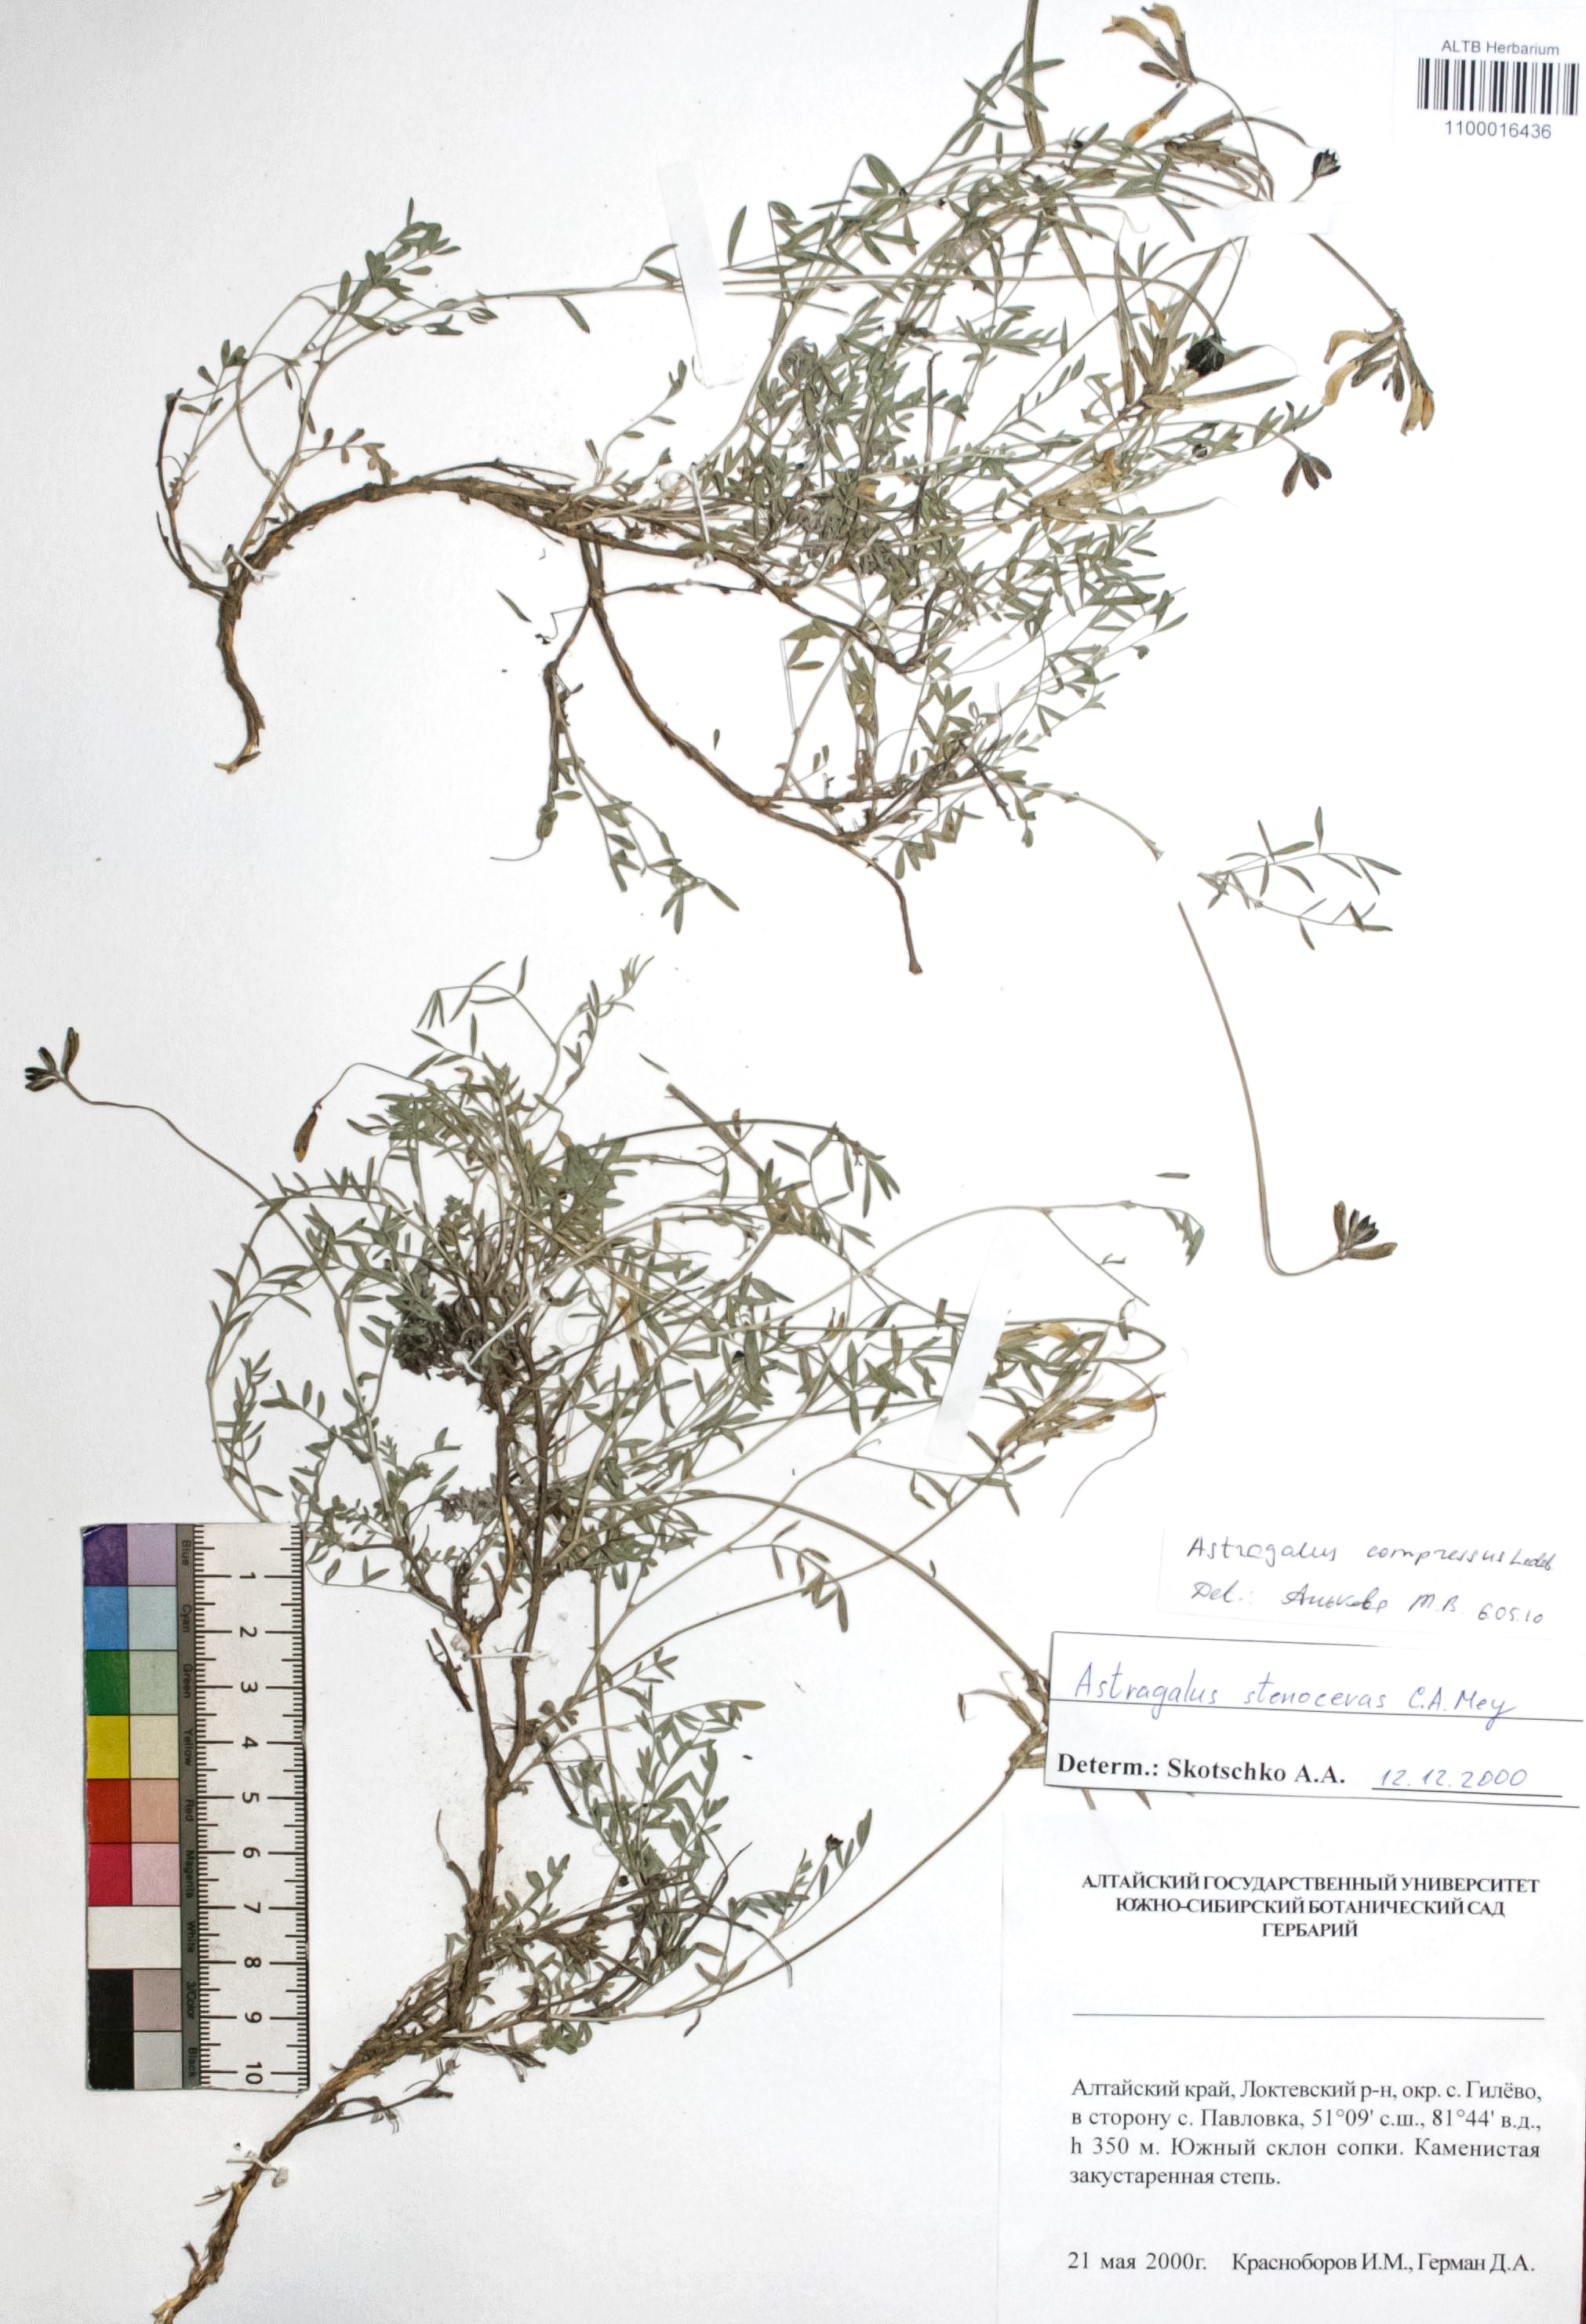 Astragalus compressus Ledeb. 